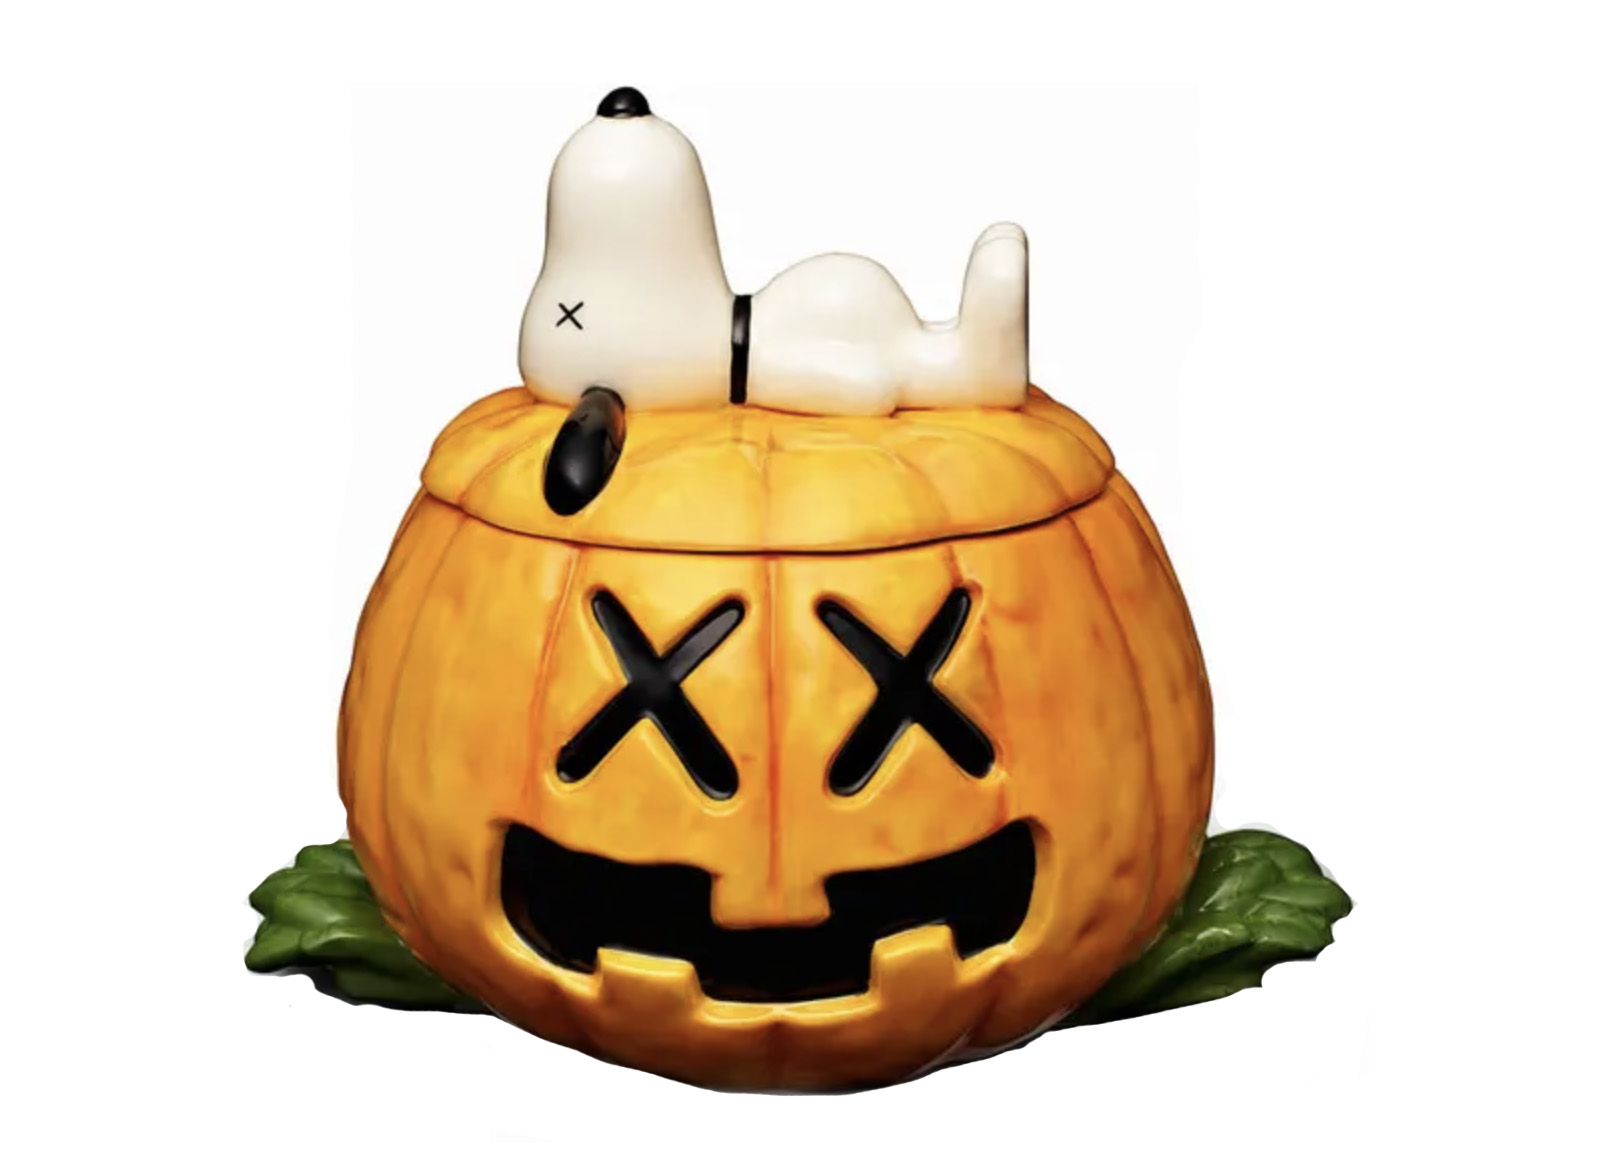 KAWS x Peanuts Snoopy Halloween Pumpkin Ceramic Jar Orange - US